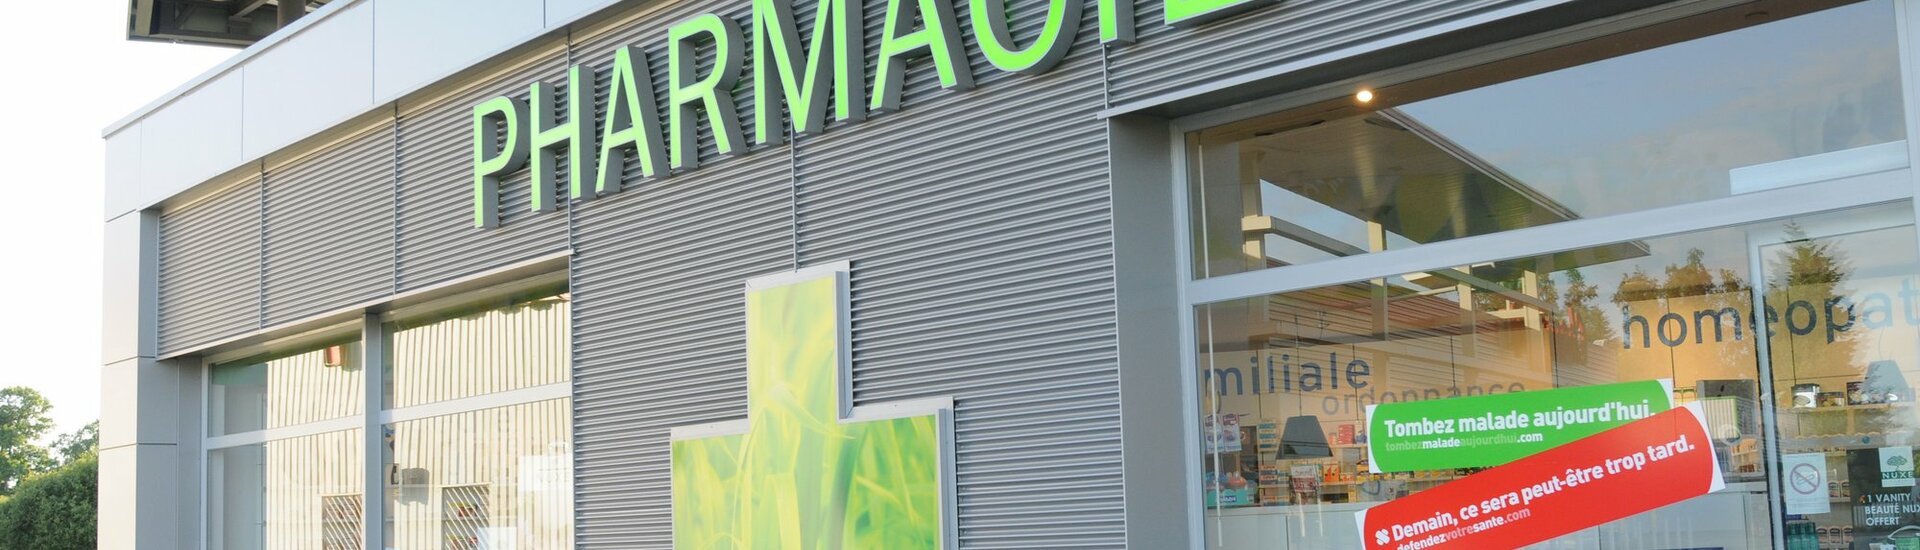 Retrouvez les pharmacies les plus proches sur la commune de Bretenoux 